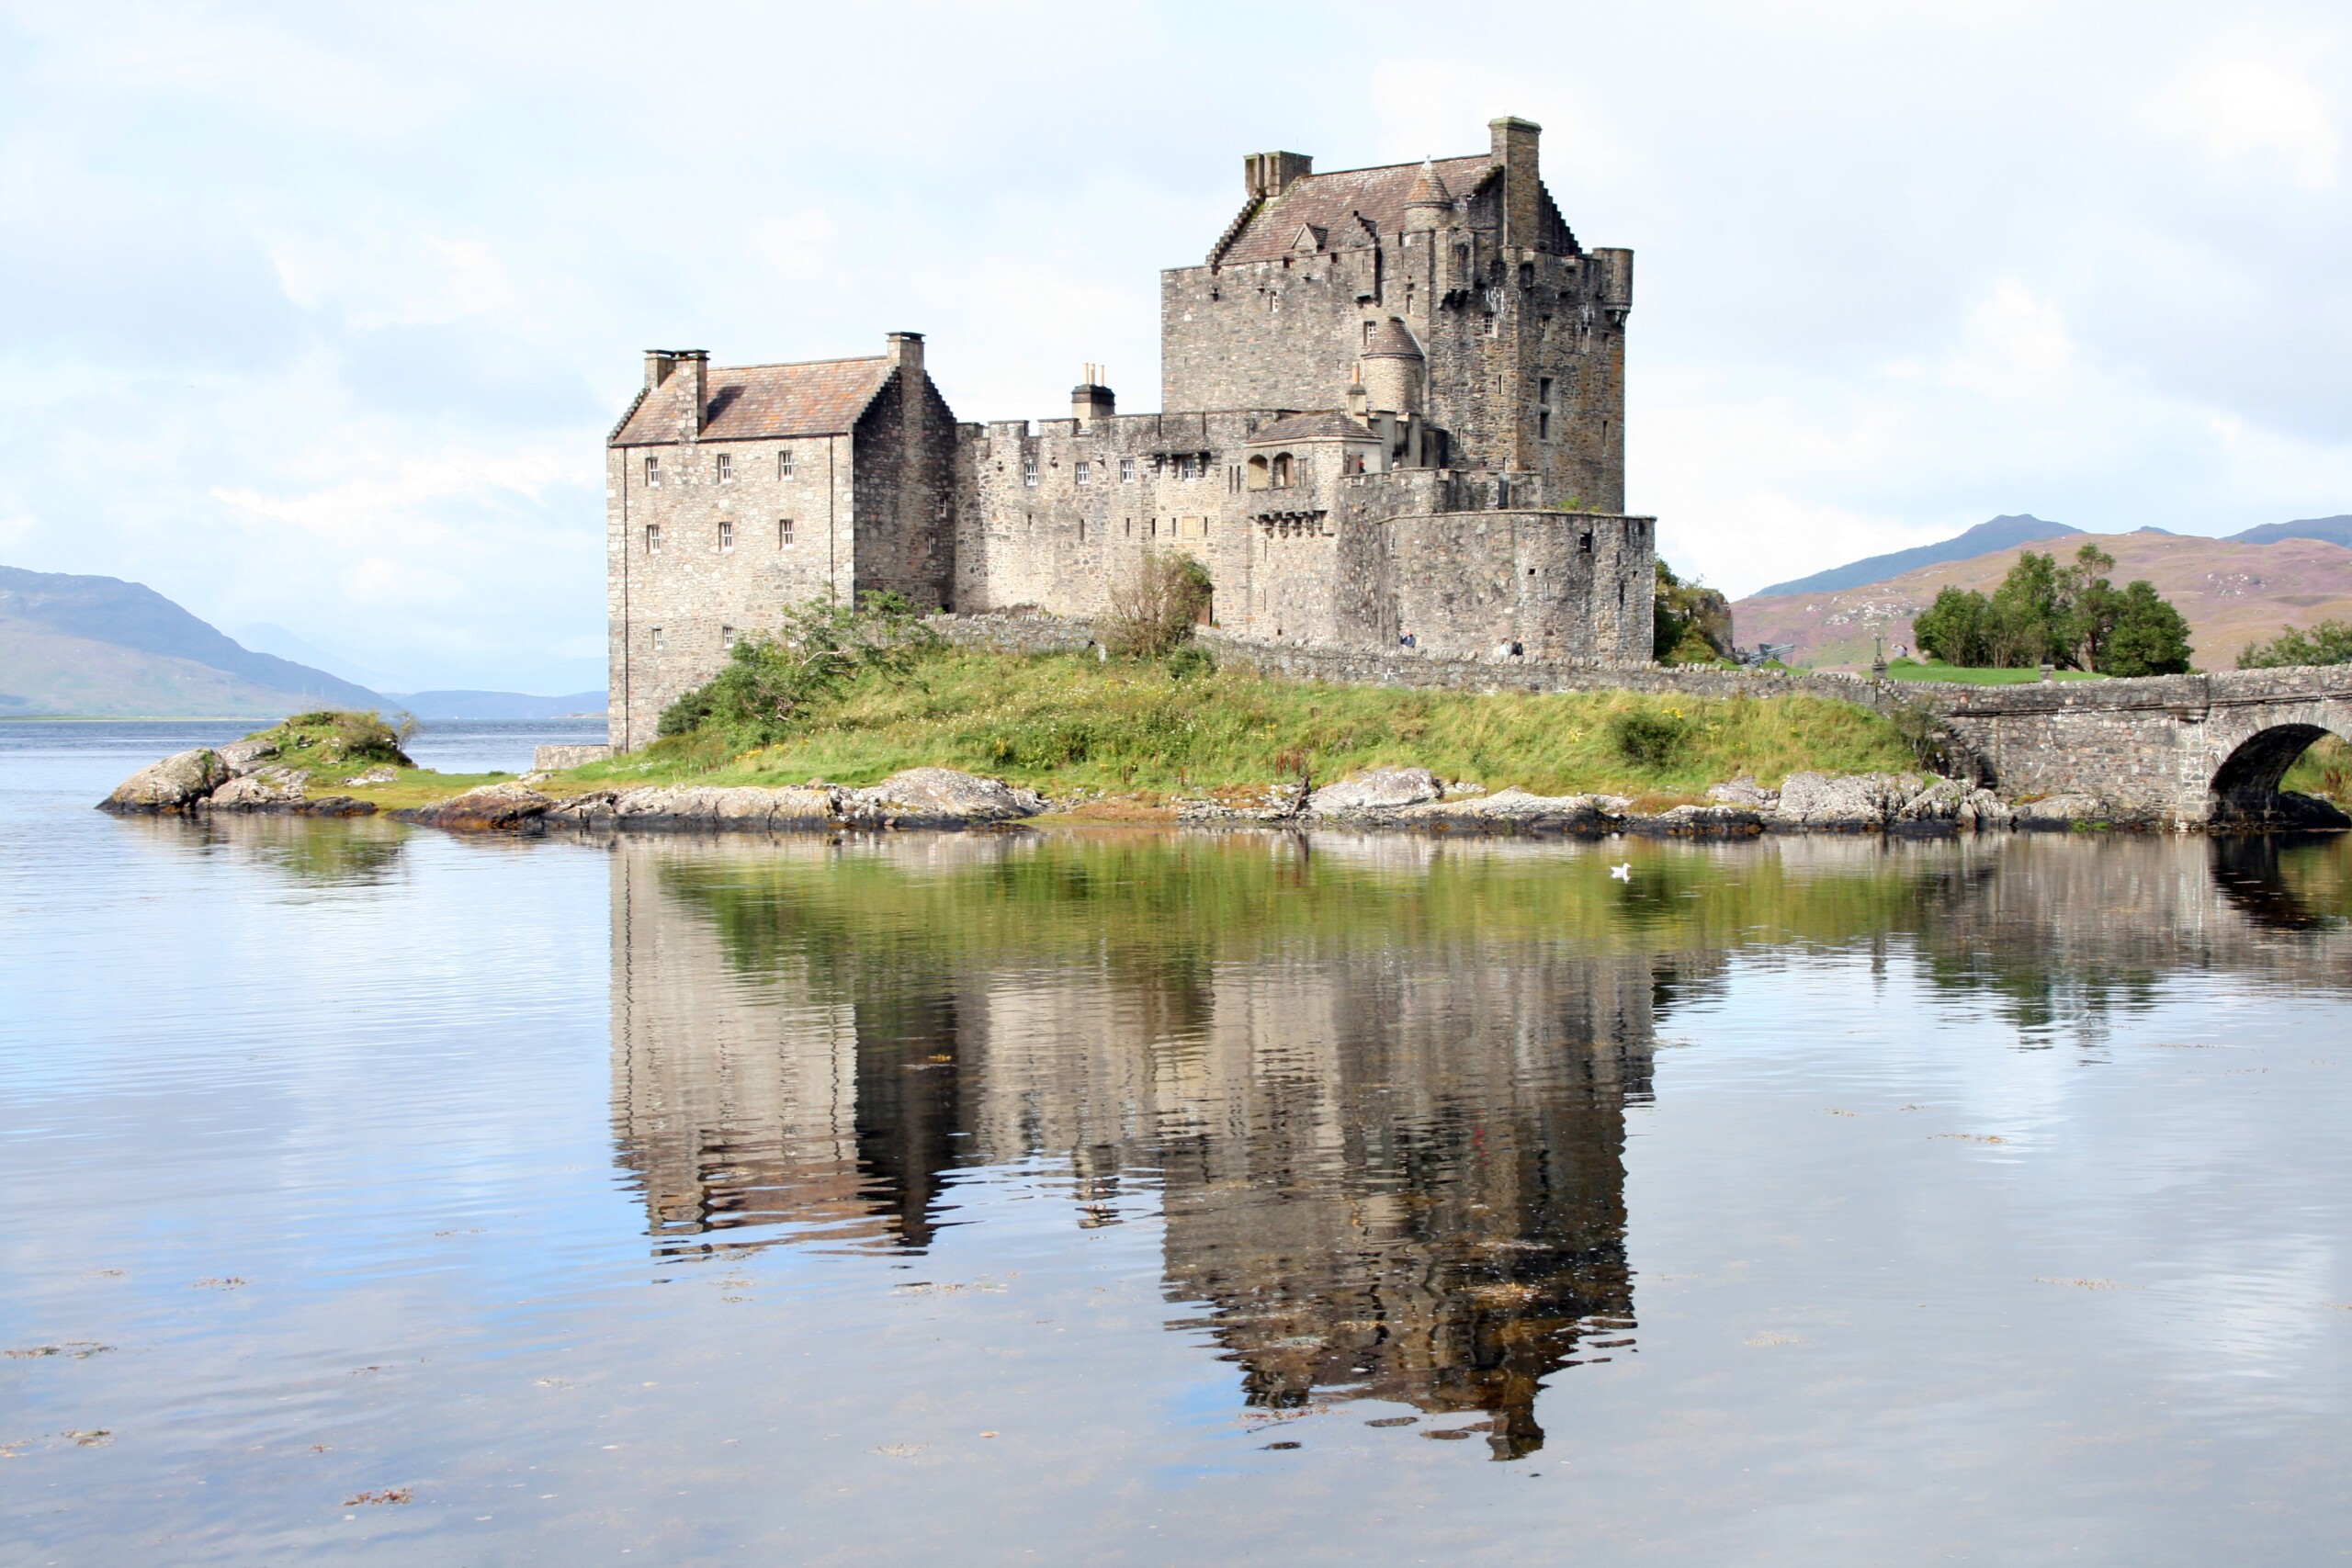 proponowana wycieczka na wyspę Skye to idealny wybór na wycieczki firmowe do Szkocji